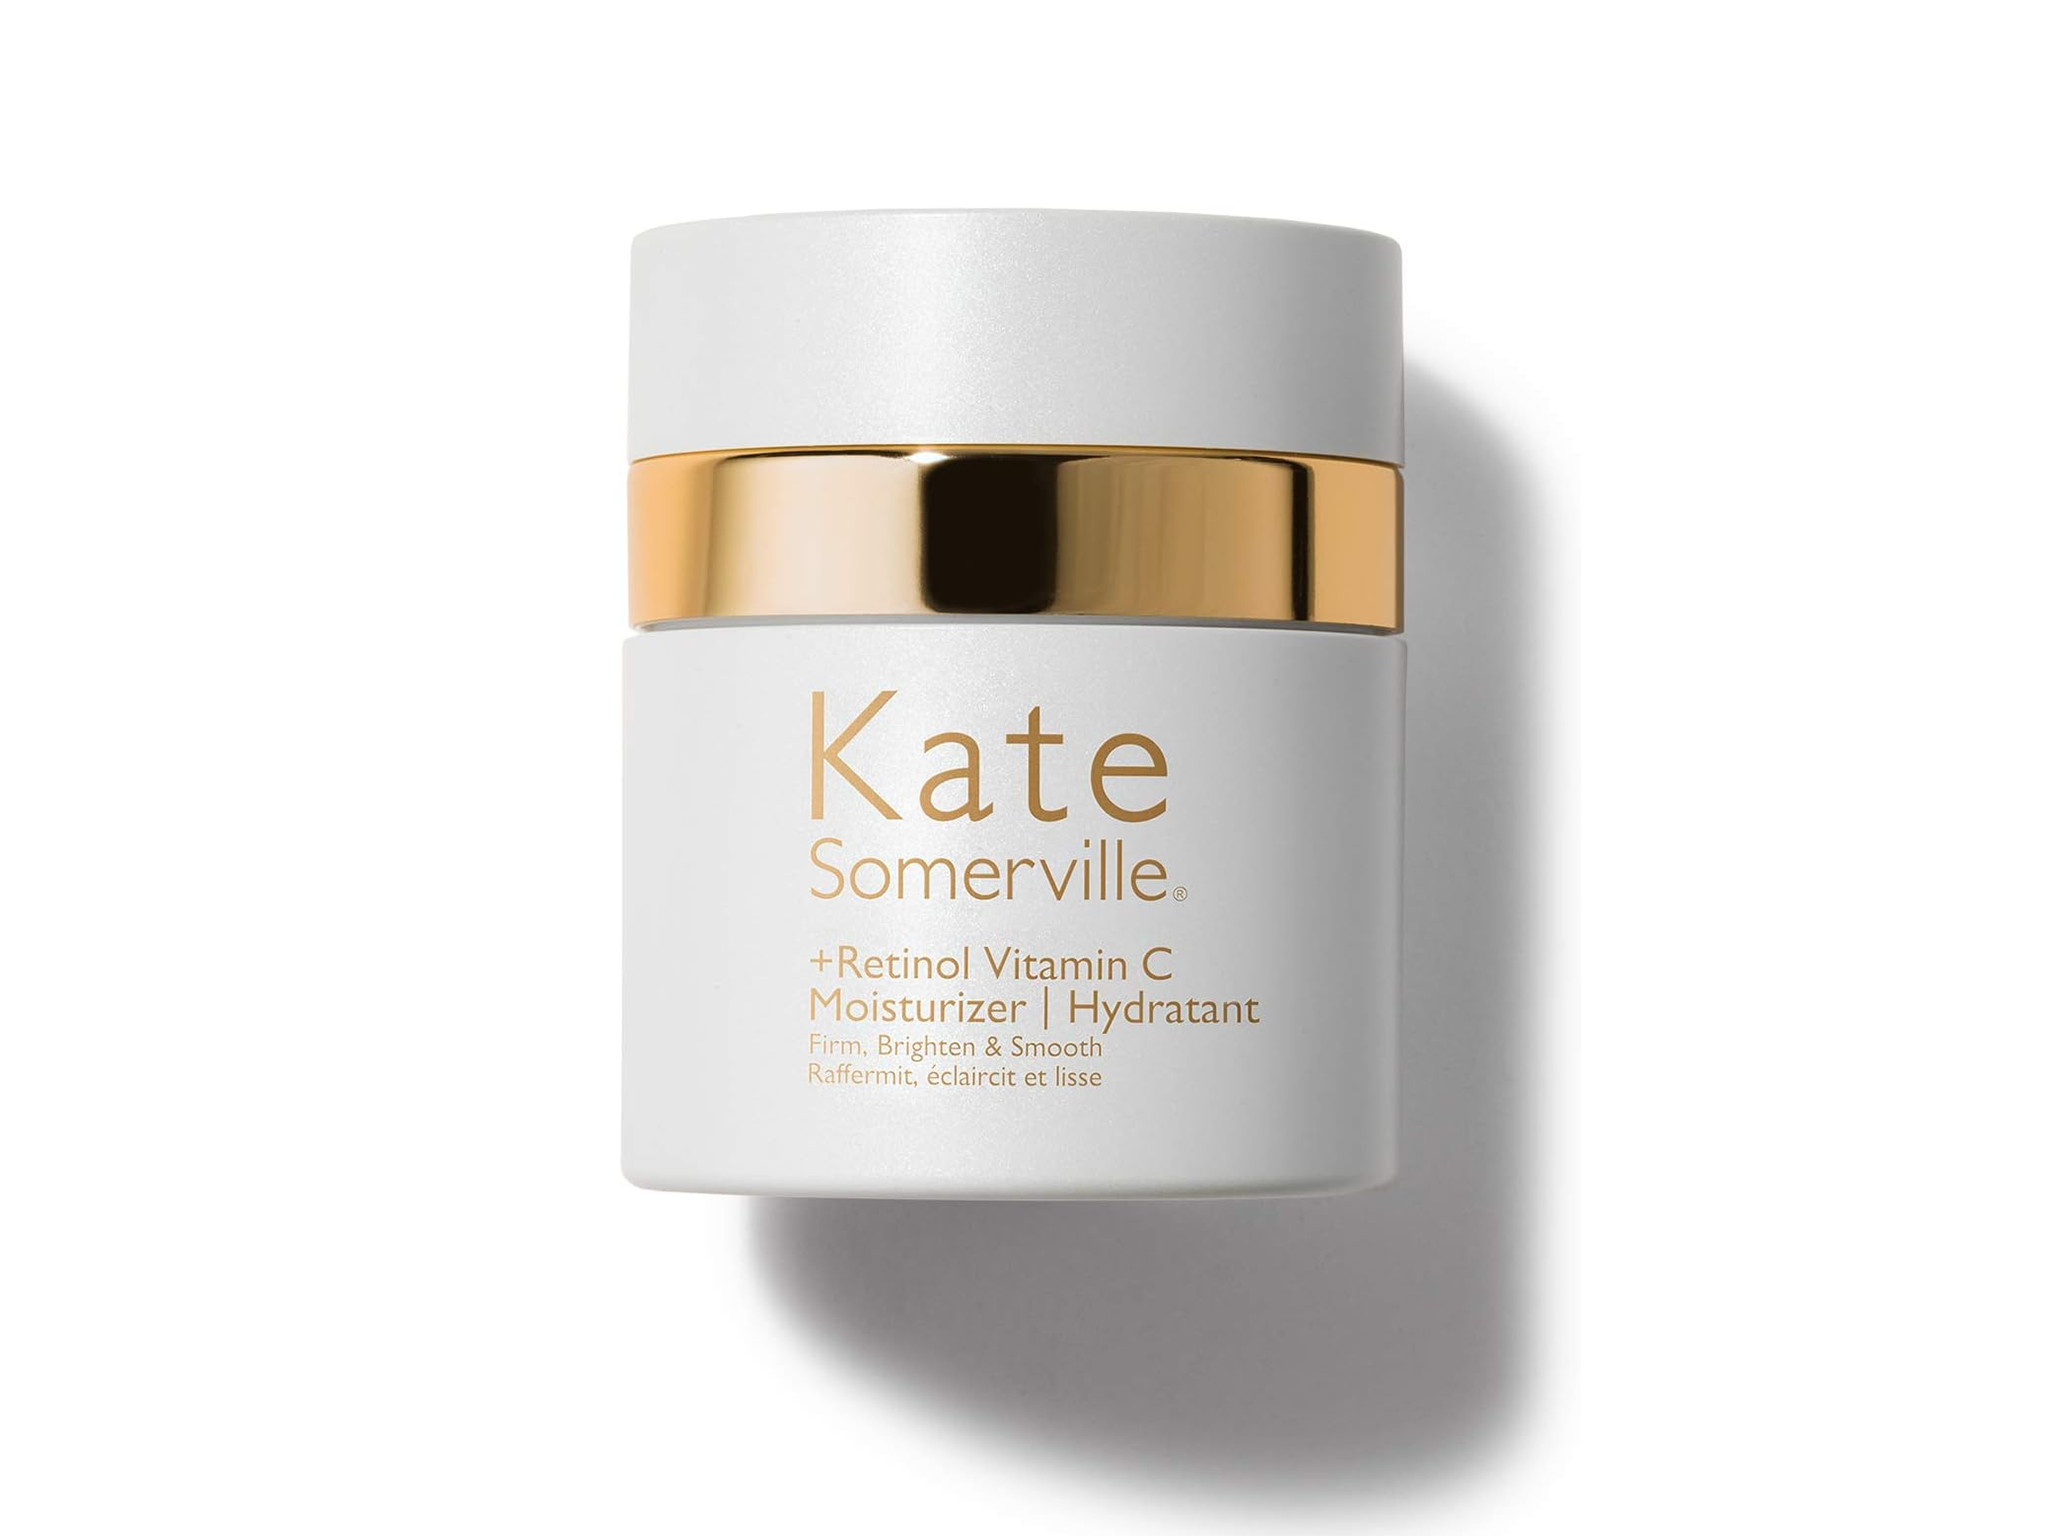 Kate Somerville retinol vitamin C moisturizer